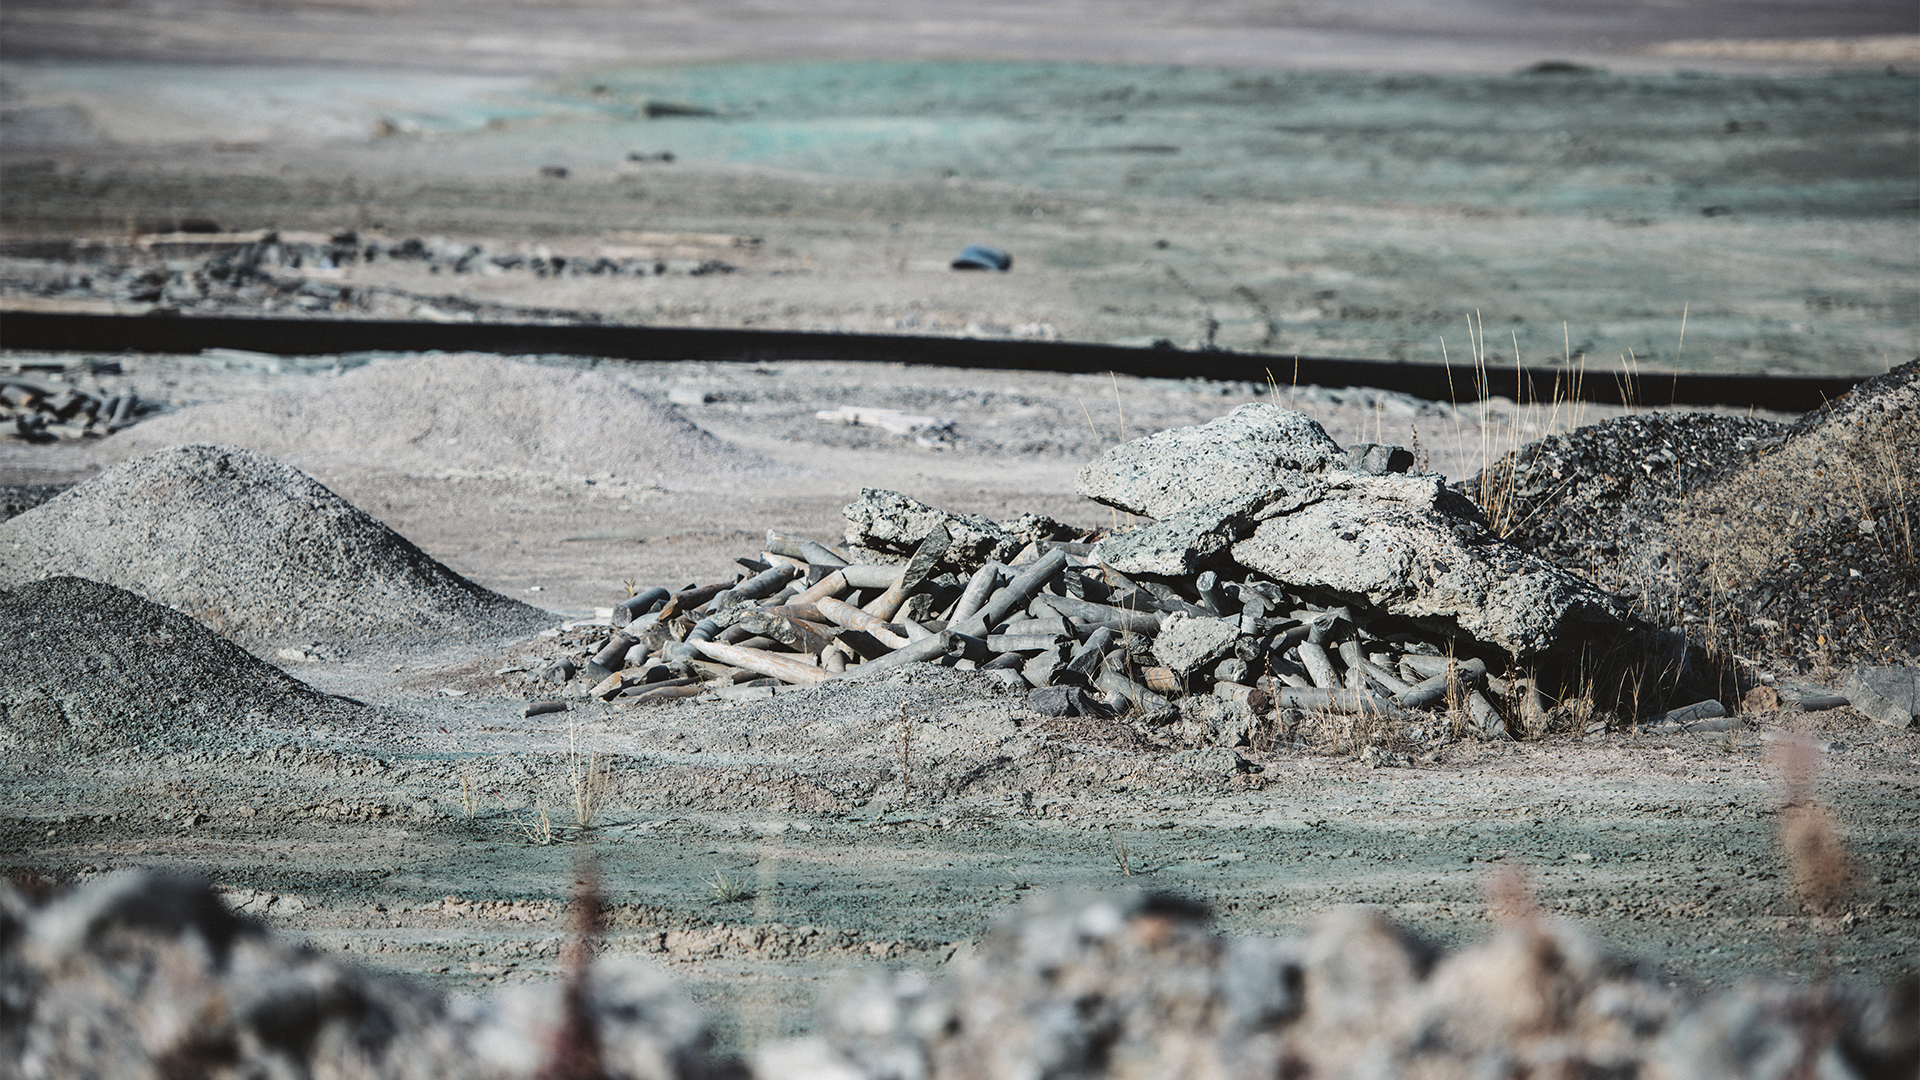 Par exemple, la décontamination de l'ancien emplacement de Giant Mine, au Yukon, coûtera à lui seul 4,38 milliards $, un sommet au pays. Les travaux, qui se sont amorcés en 2005, se prolongeront jusqu'en 2038.